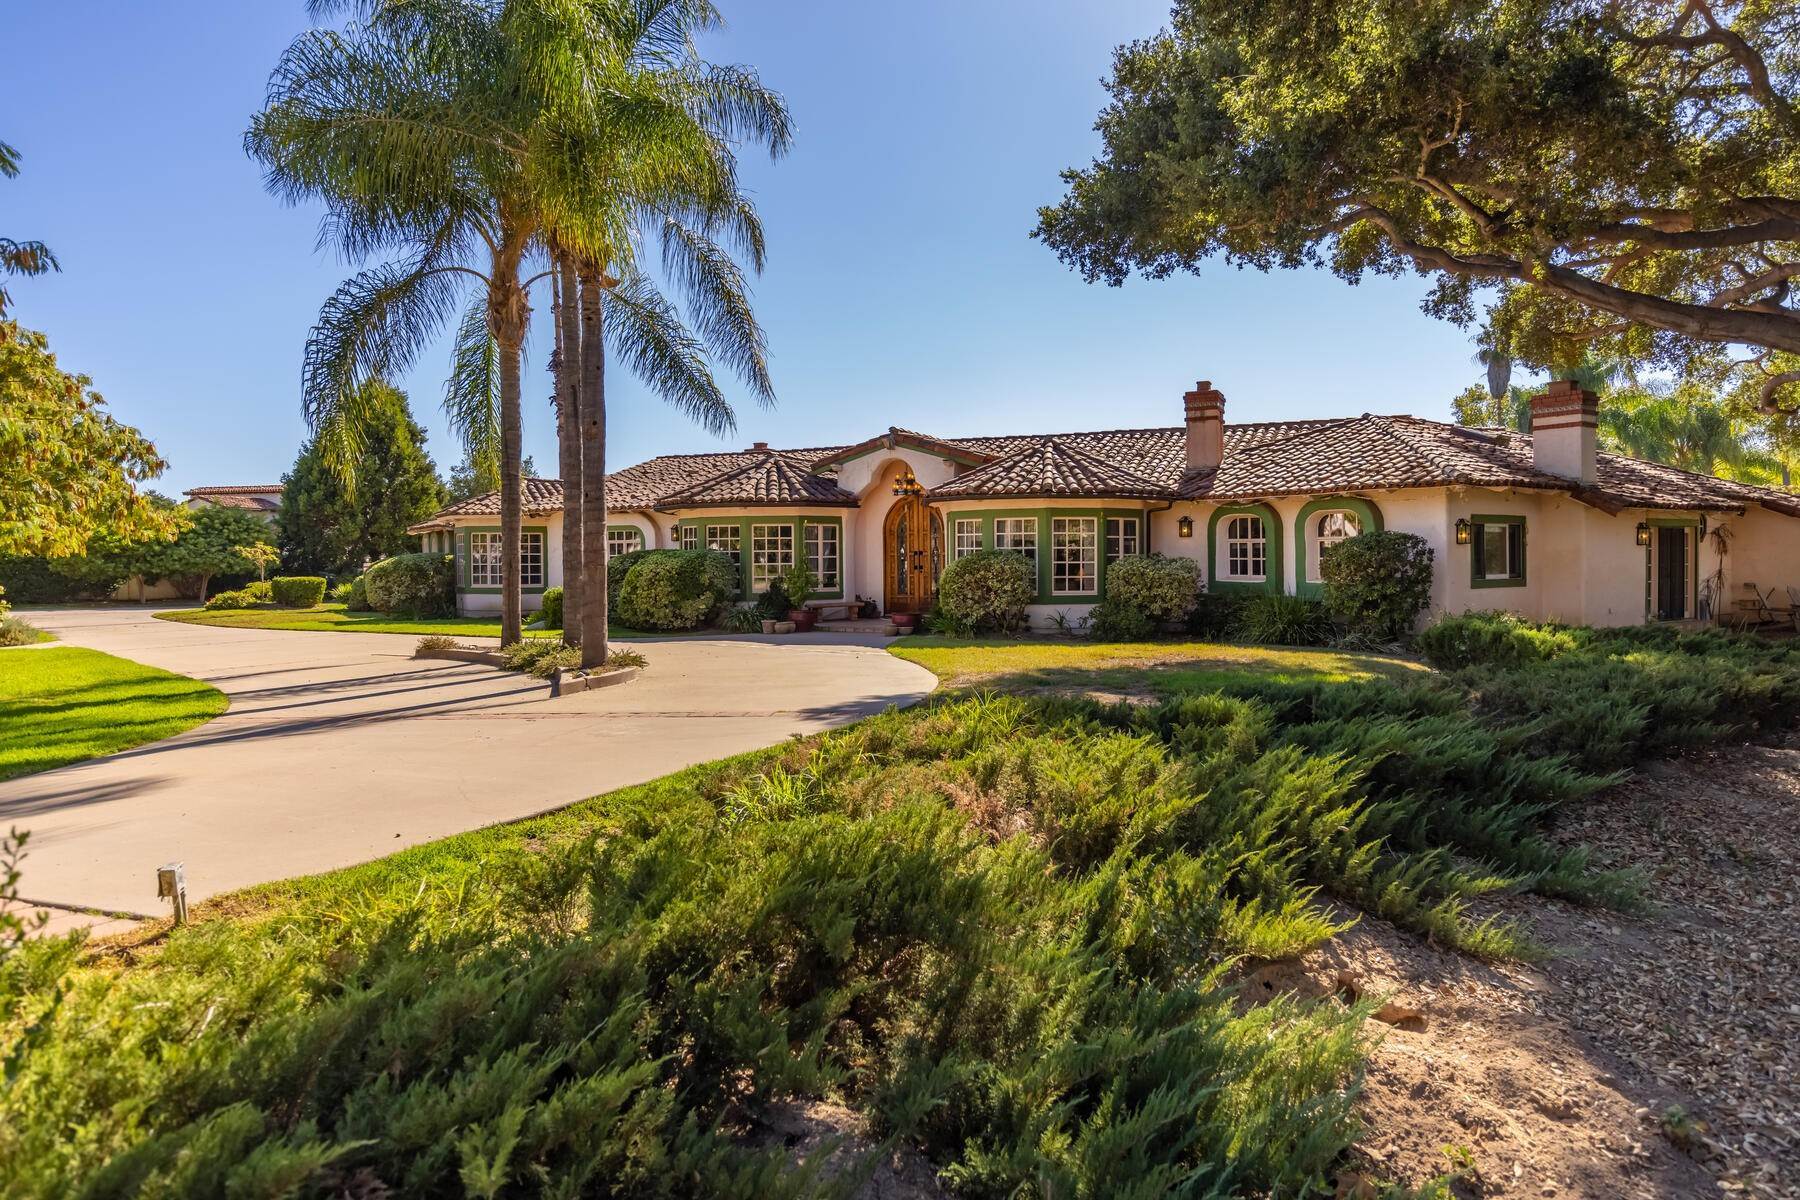 Property 为 销售 在 Casa de los Encinos 12147 Linda Flora Drive 奥海镇, 加利福尼亚州 93023 美国